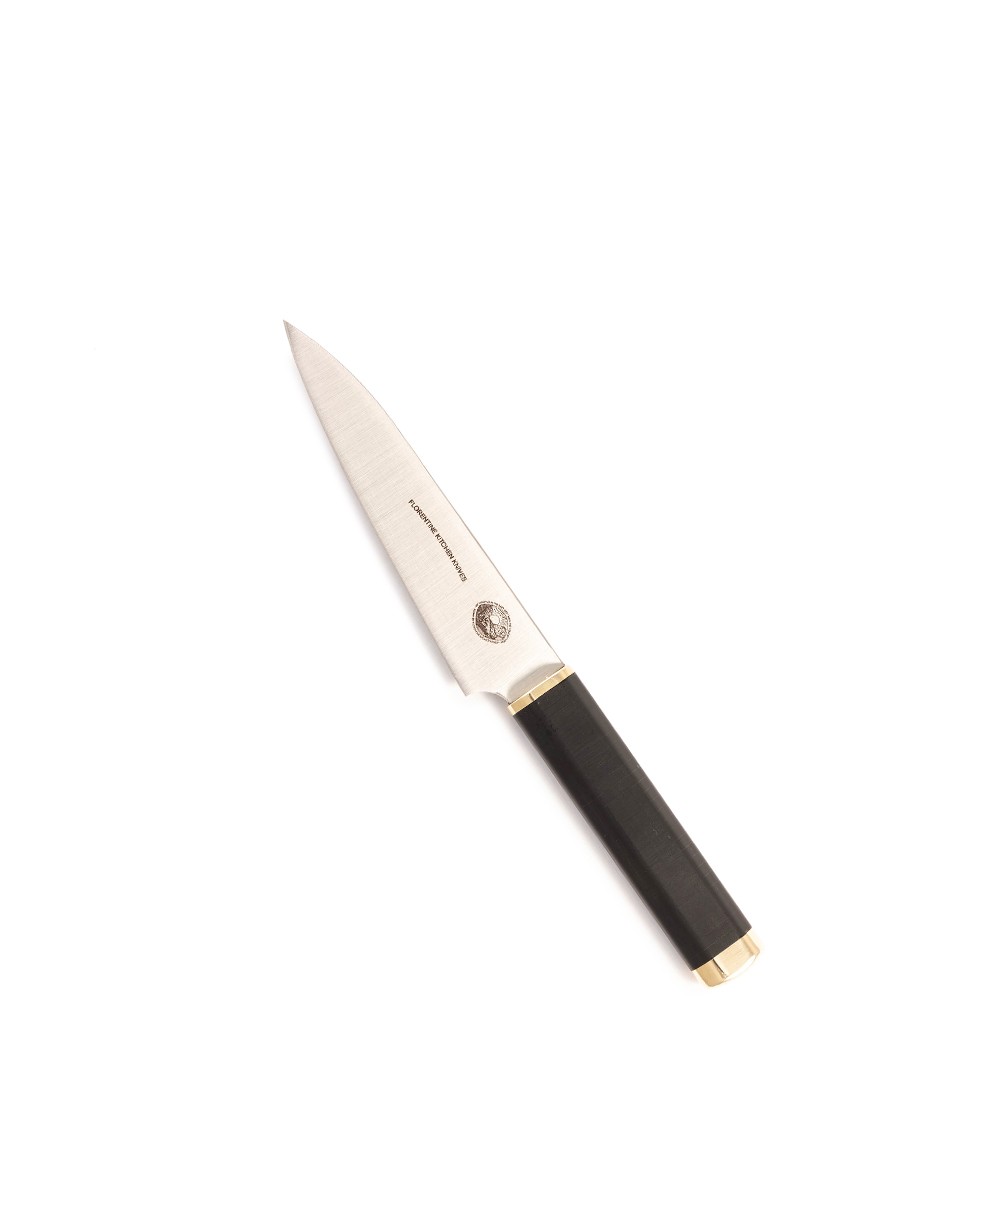 Produktbild des Kedma Paring Küchenmesser in black von Florentine Kitchen Knives im RAUM concept store 